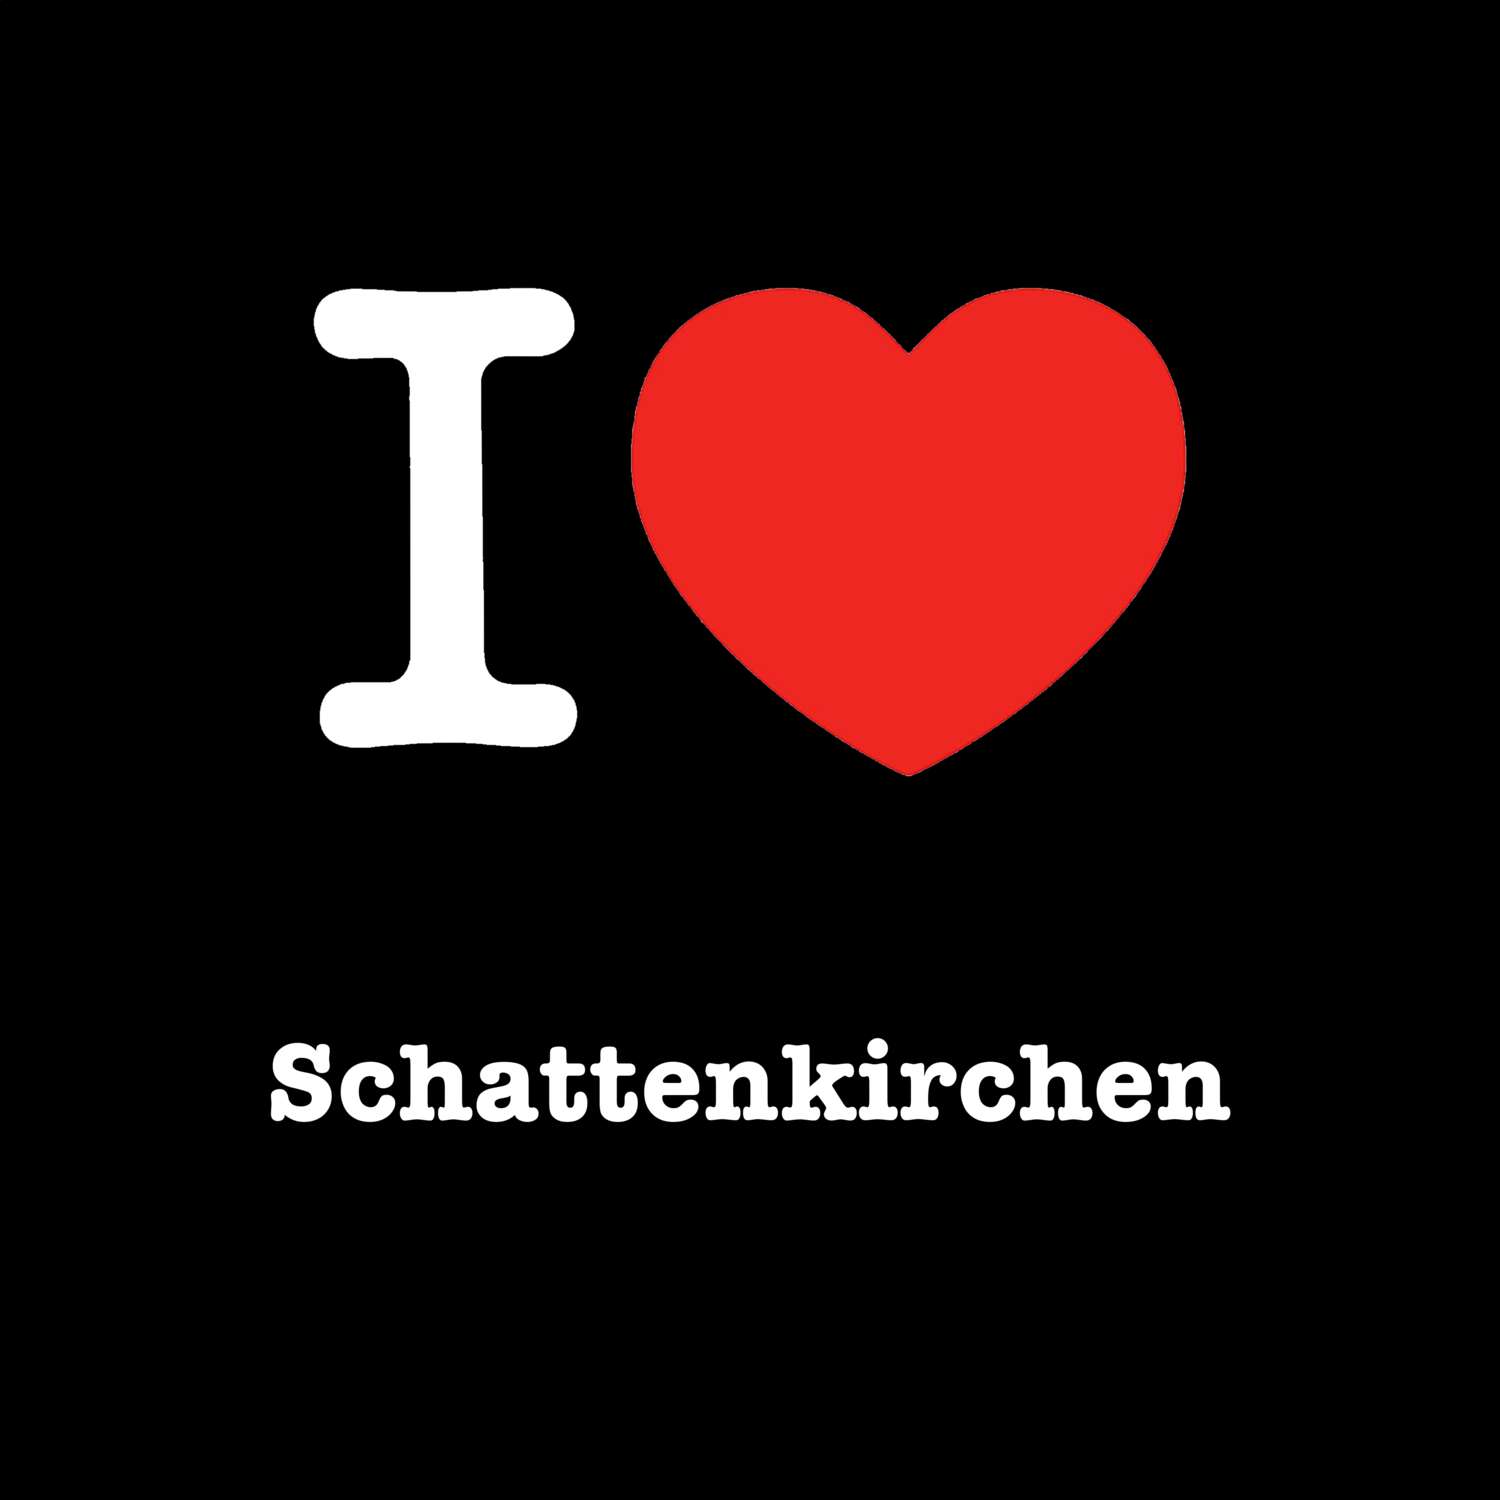 Schattenkirchen T-Shirt »I love«